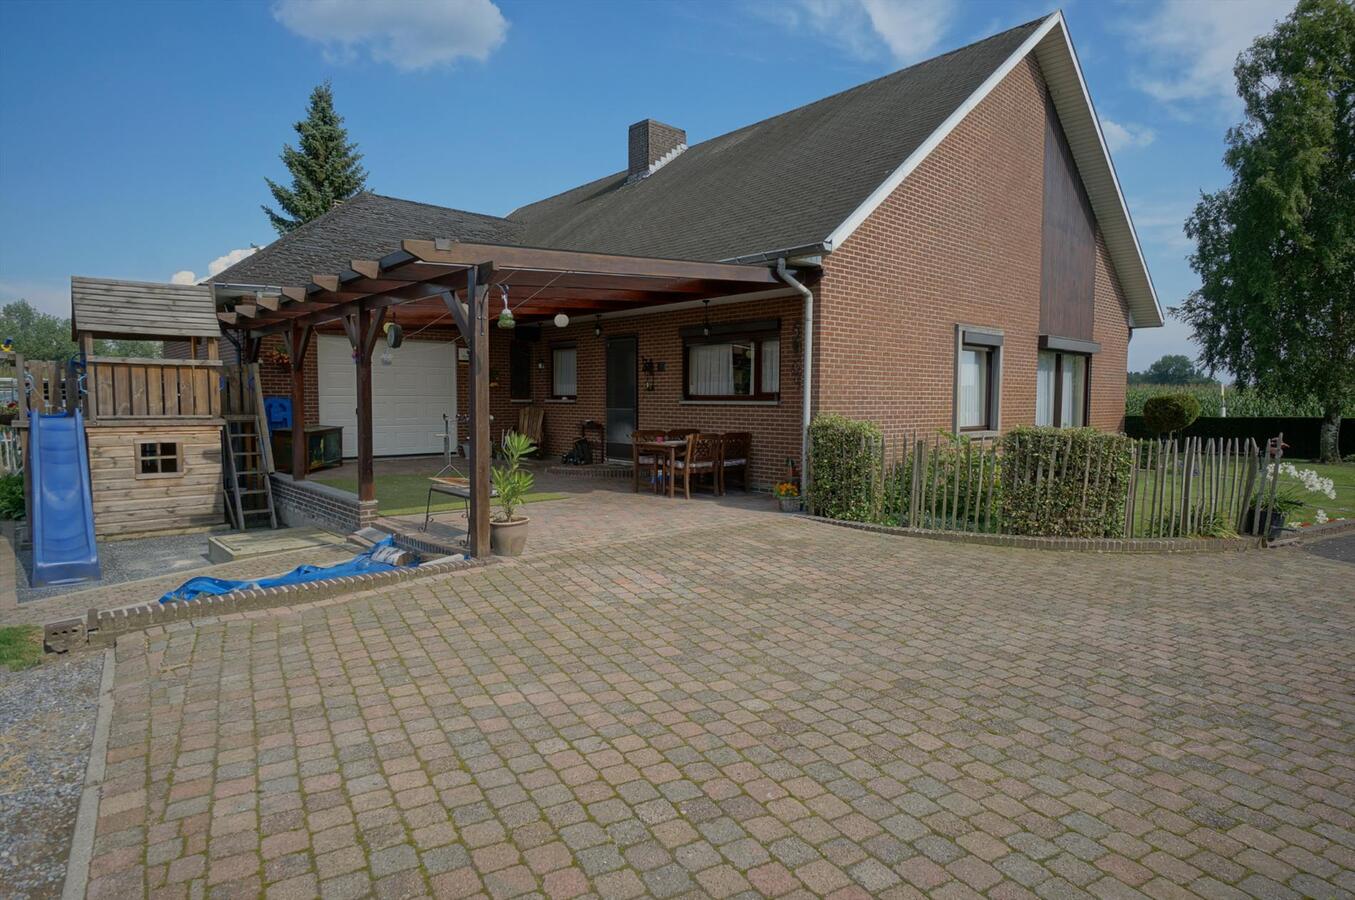 Property sold in Neerpelt